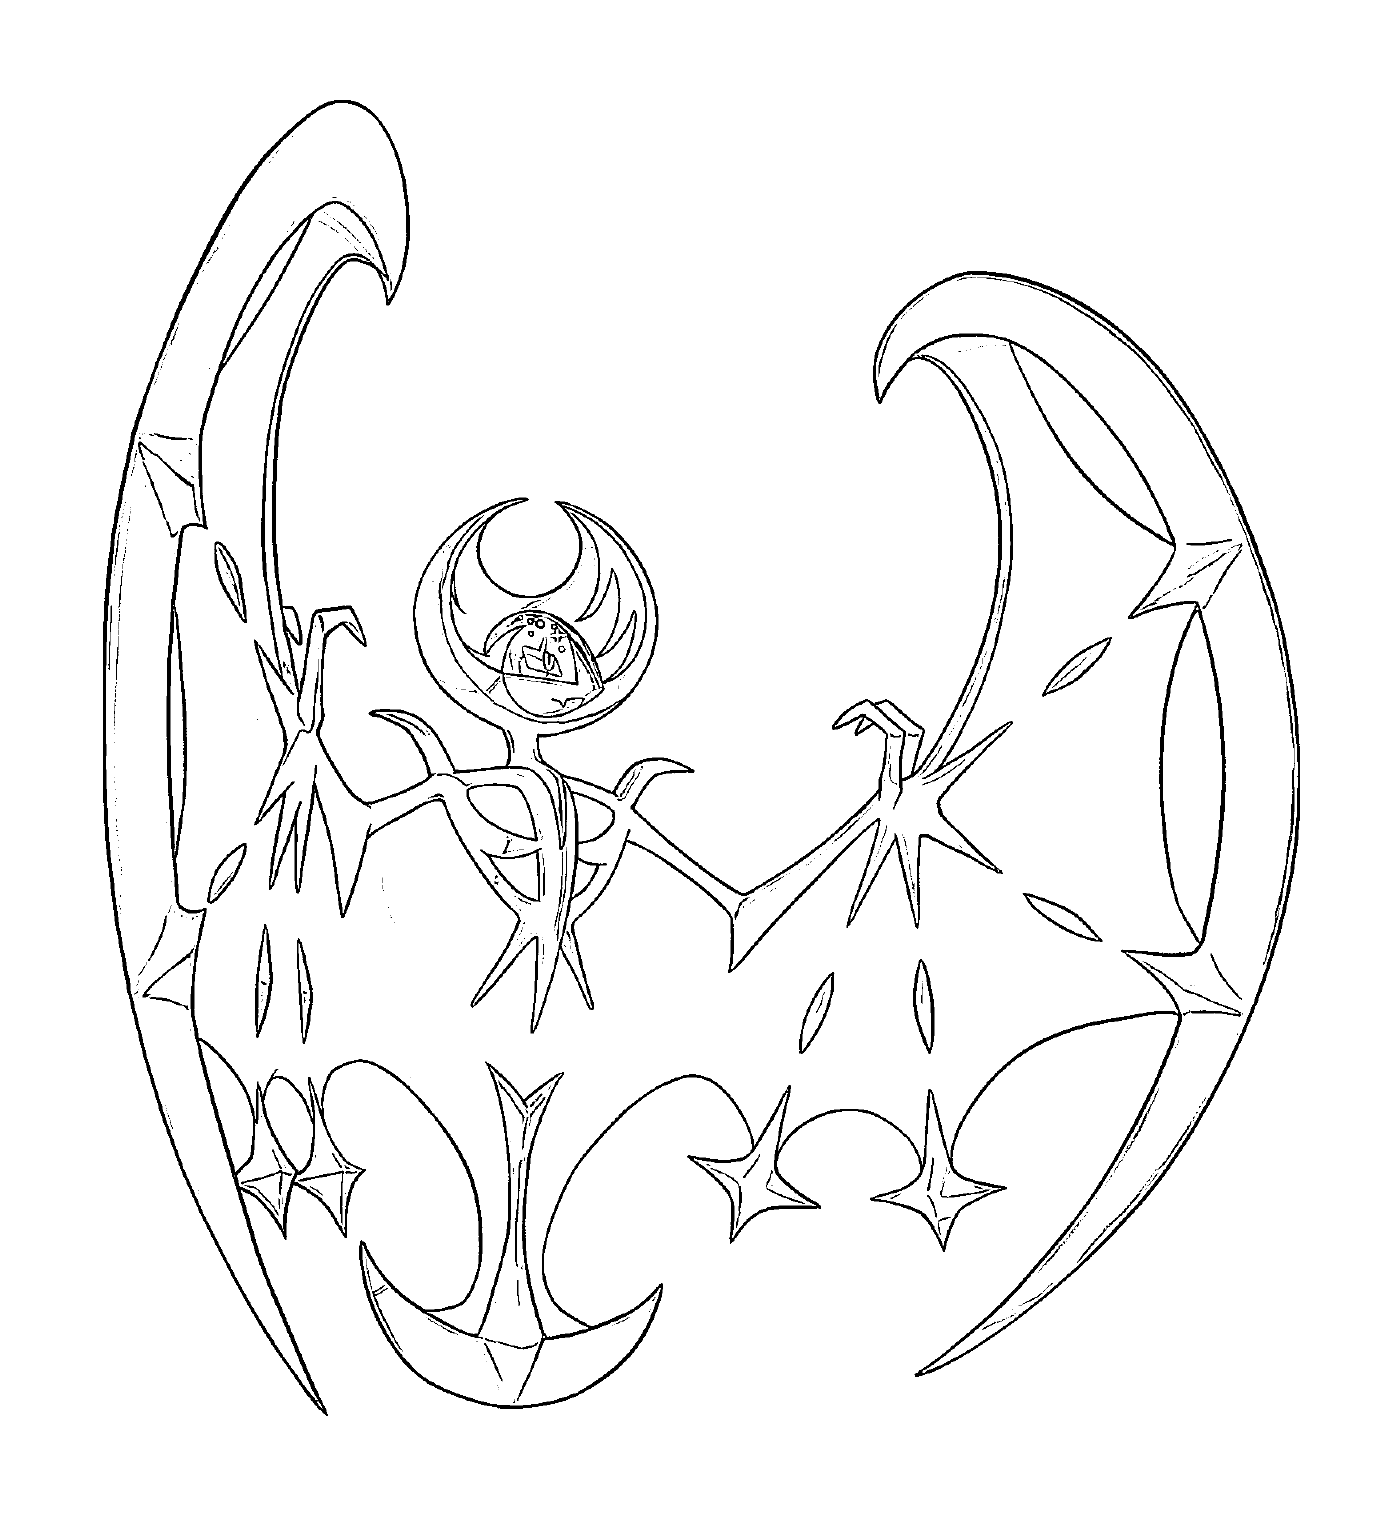  Lunala, a bat 